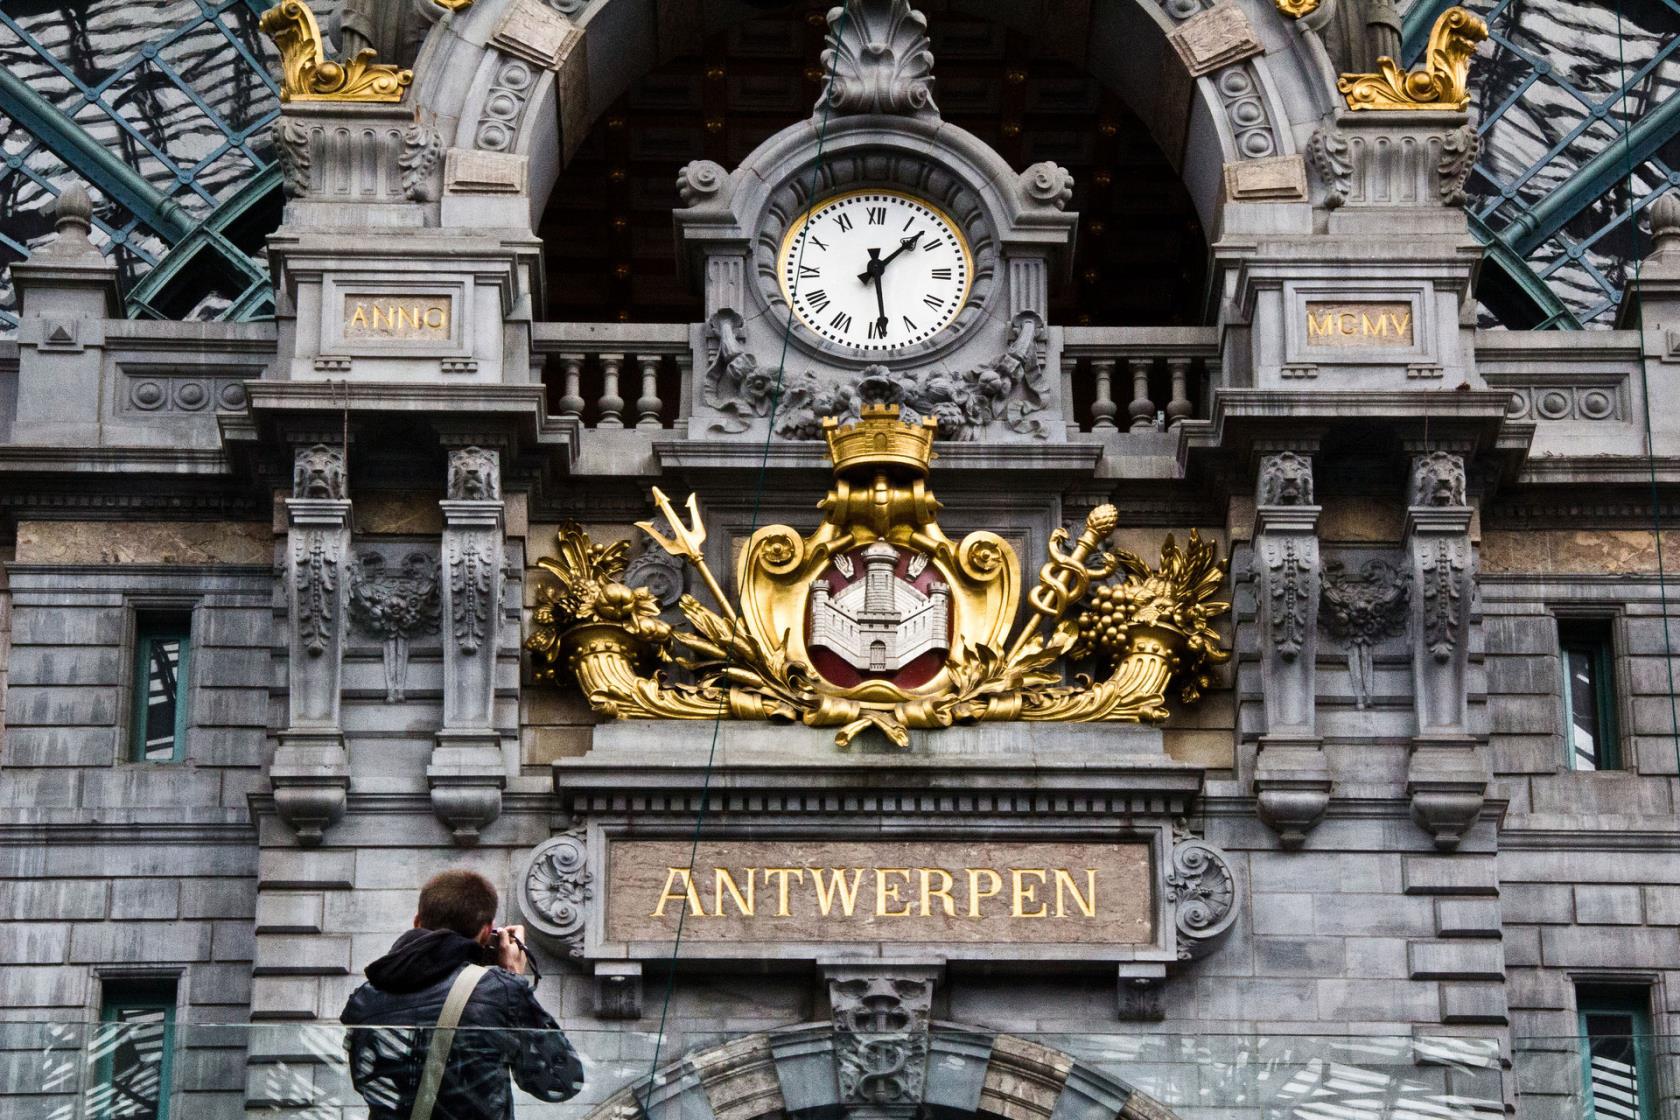 Antwerpen central